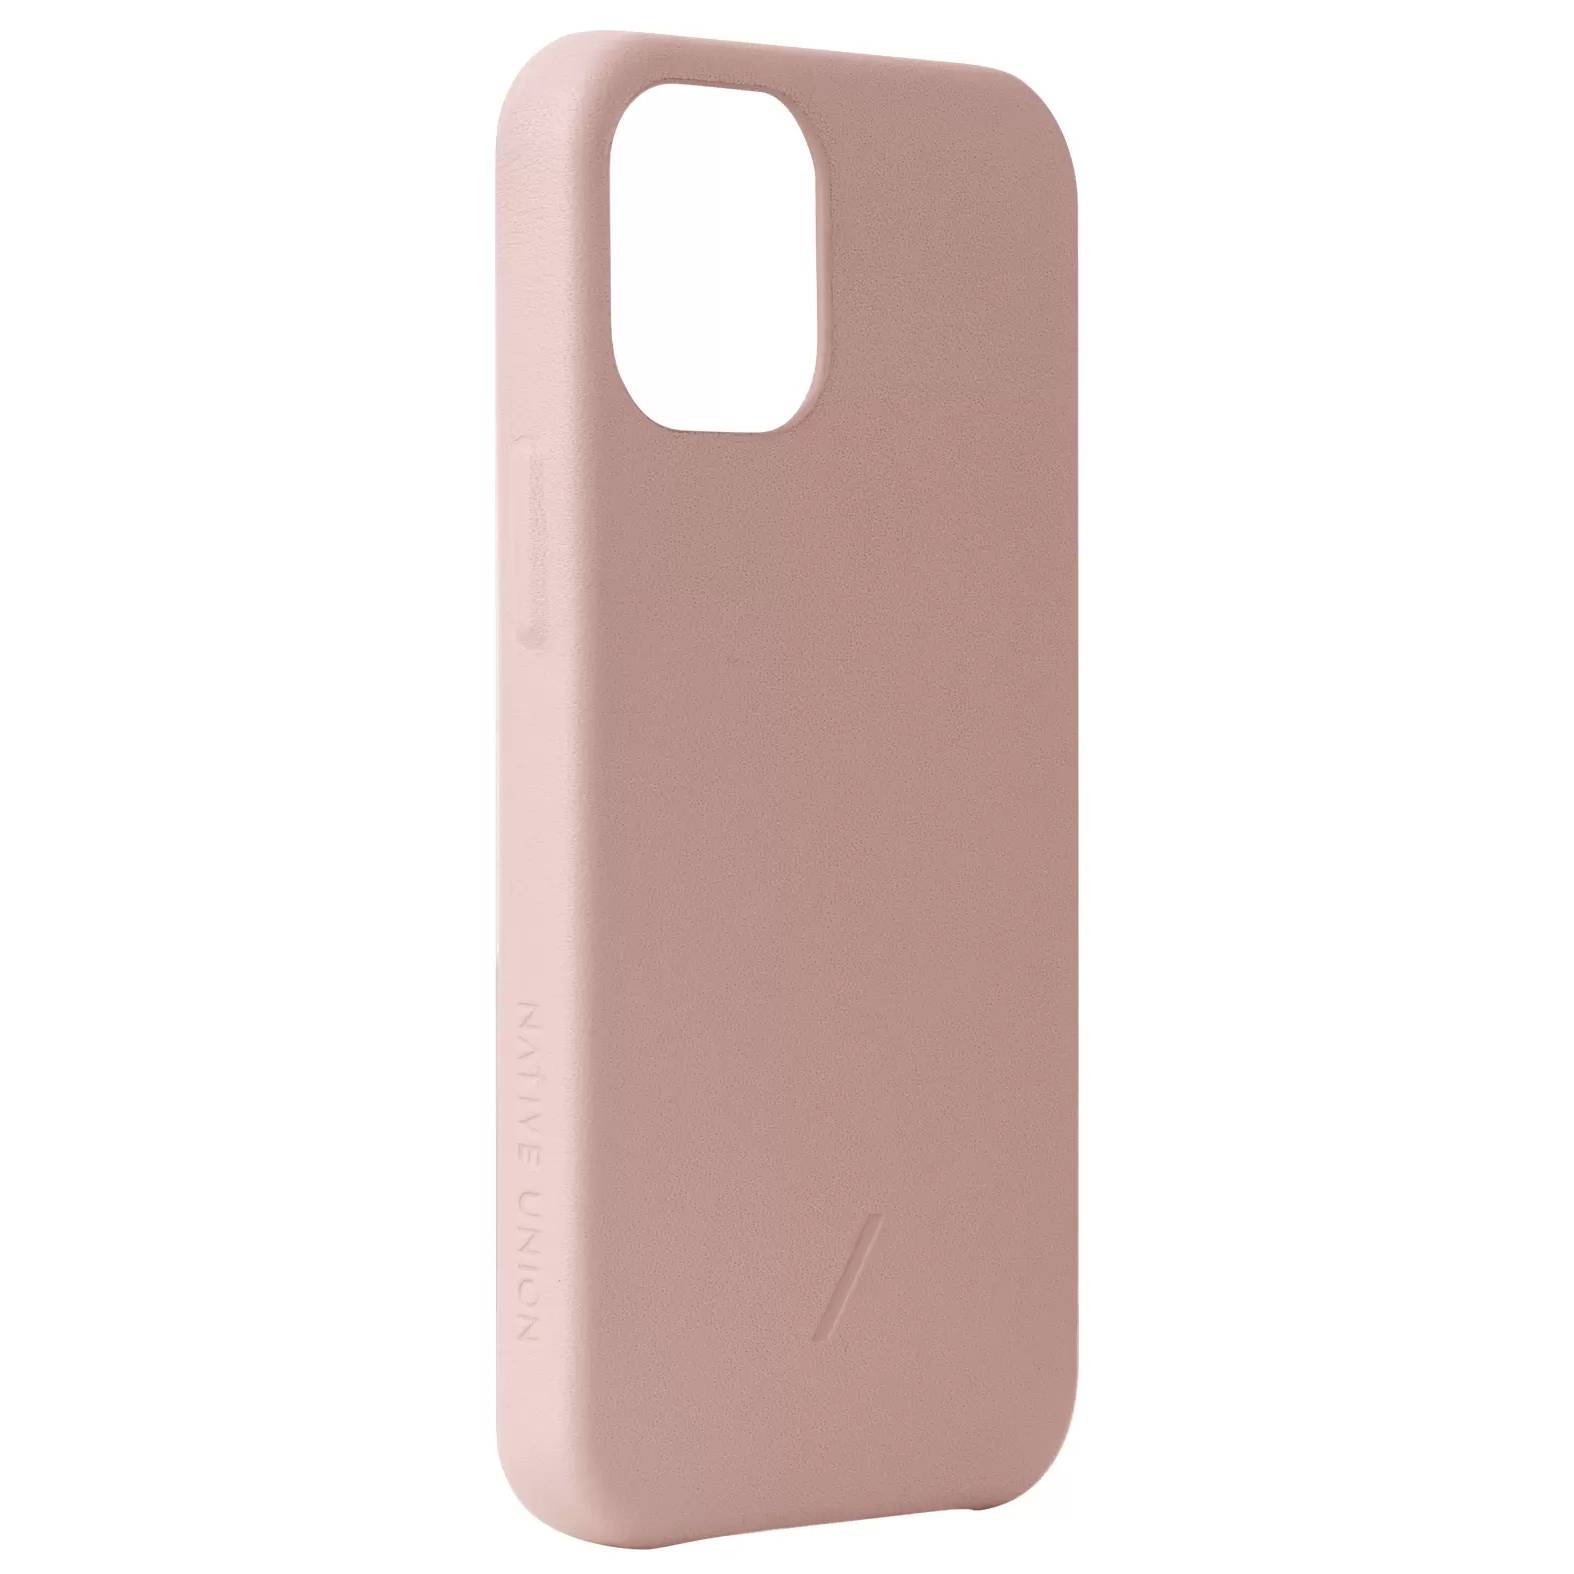 Фото — Чехол для смартфона Native Union CLIC CLASSIC iPhone 12 Pro Max, розовый